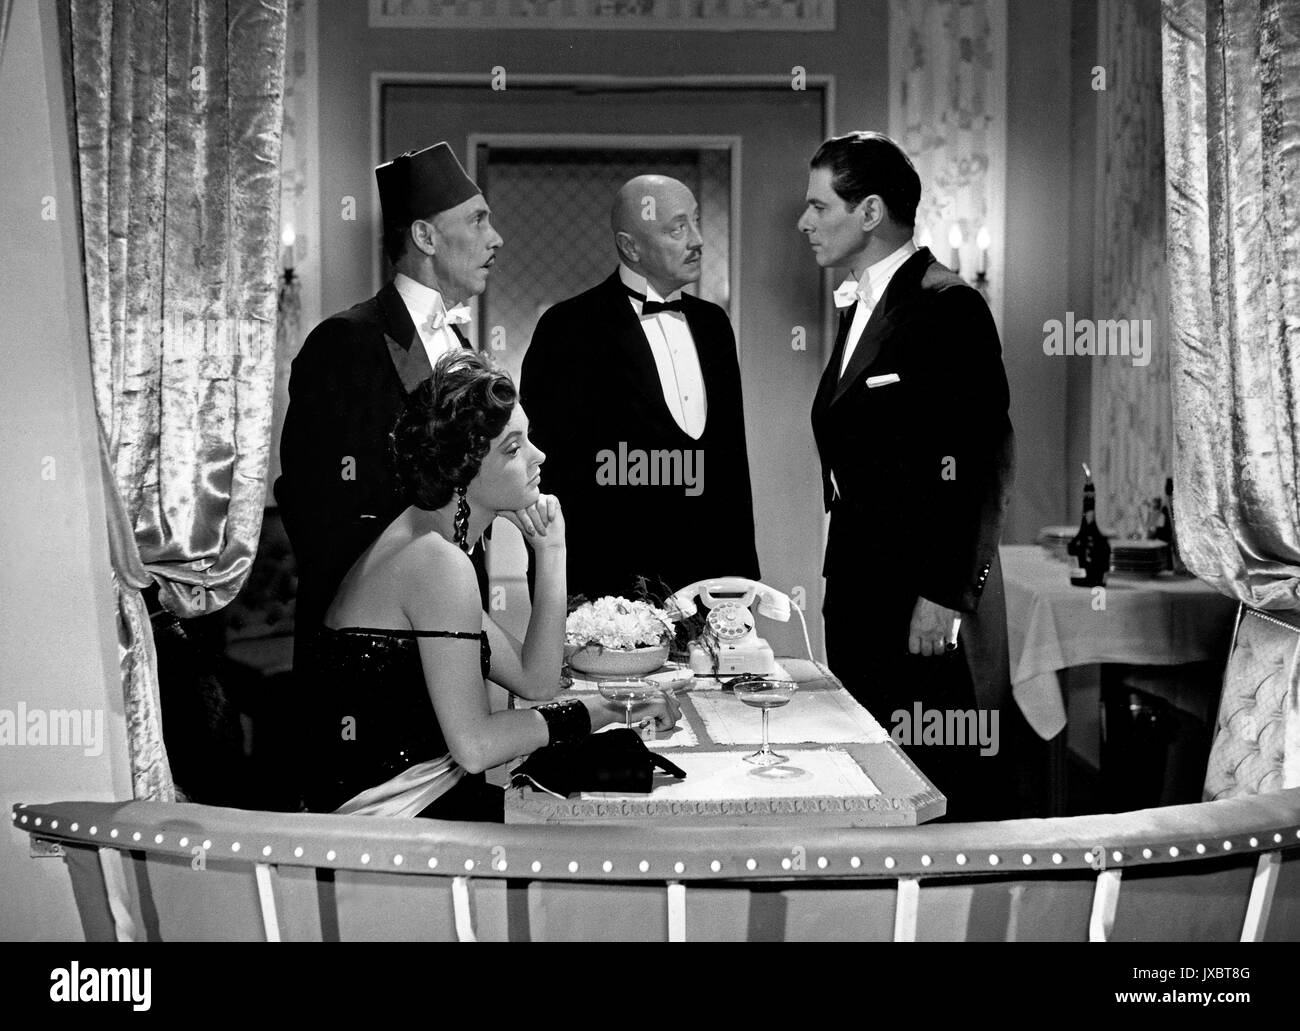 Ball im Savoy, Deutschland 1955, Regie: Paul Martin, Darsteller: (v. l.) Rudolf Platte, Nadja Tiller, Hubert von Meyerinck, Rudolf Prack Foto Stock